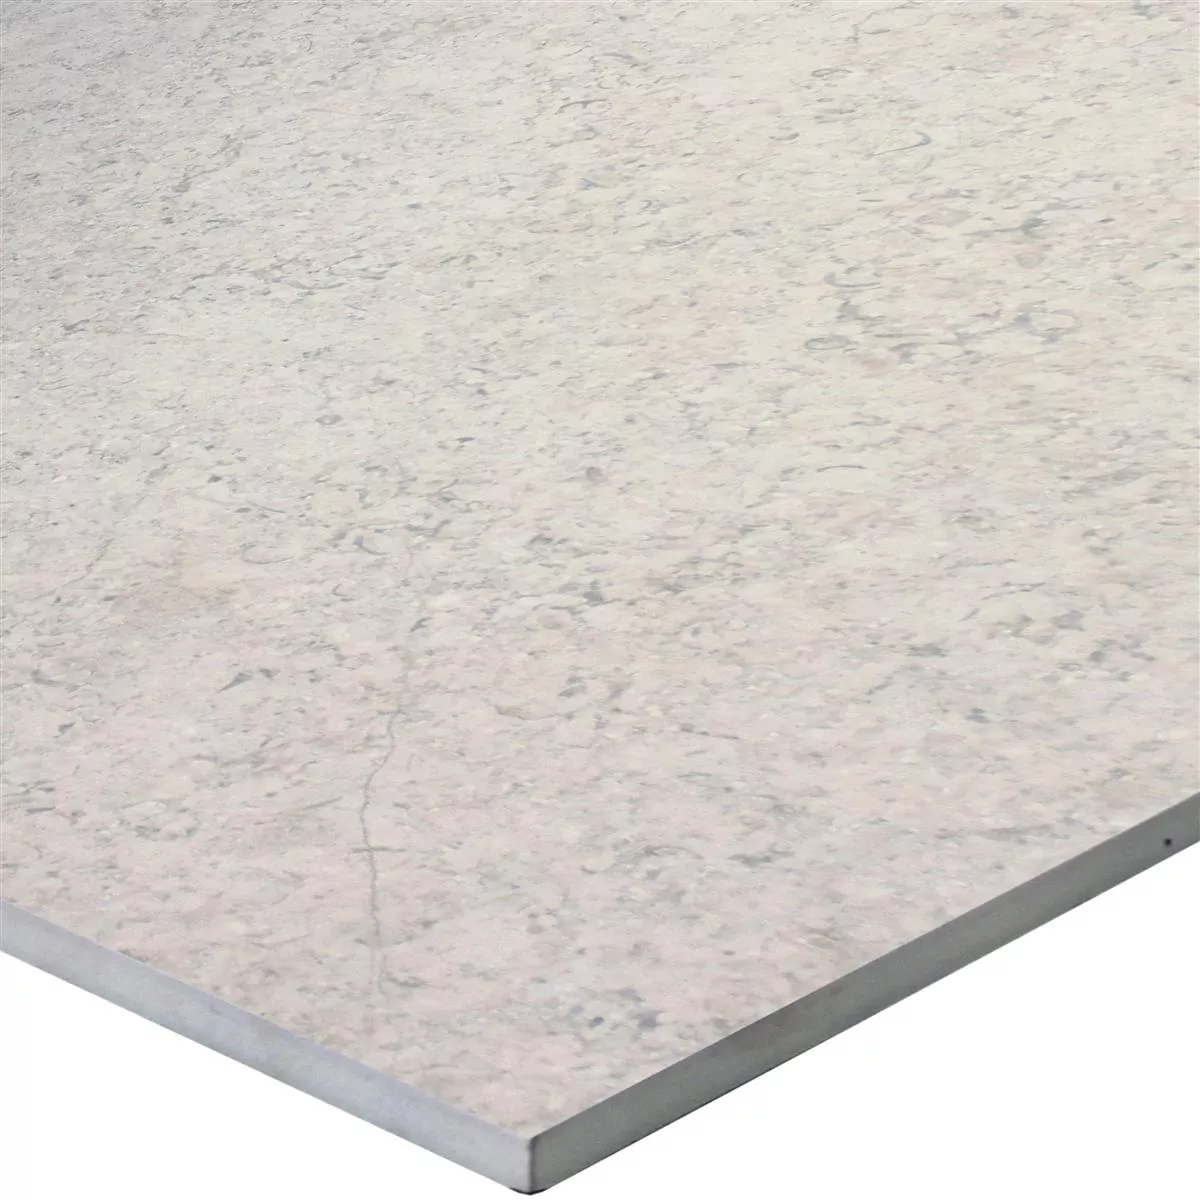 Sample Floor Tiles Stone Optic Shaydon Ivory 60x60cm